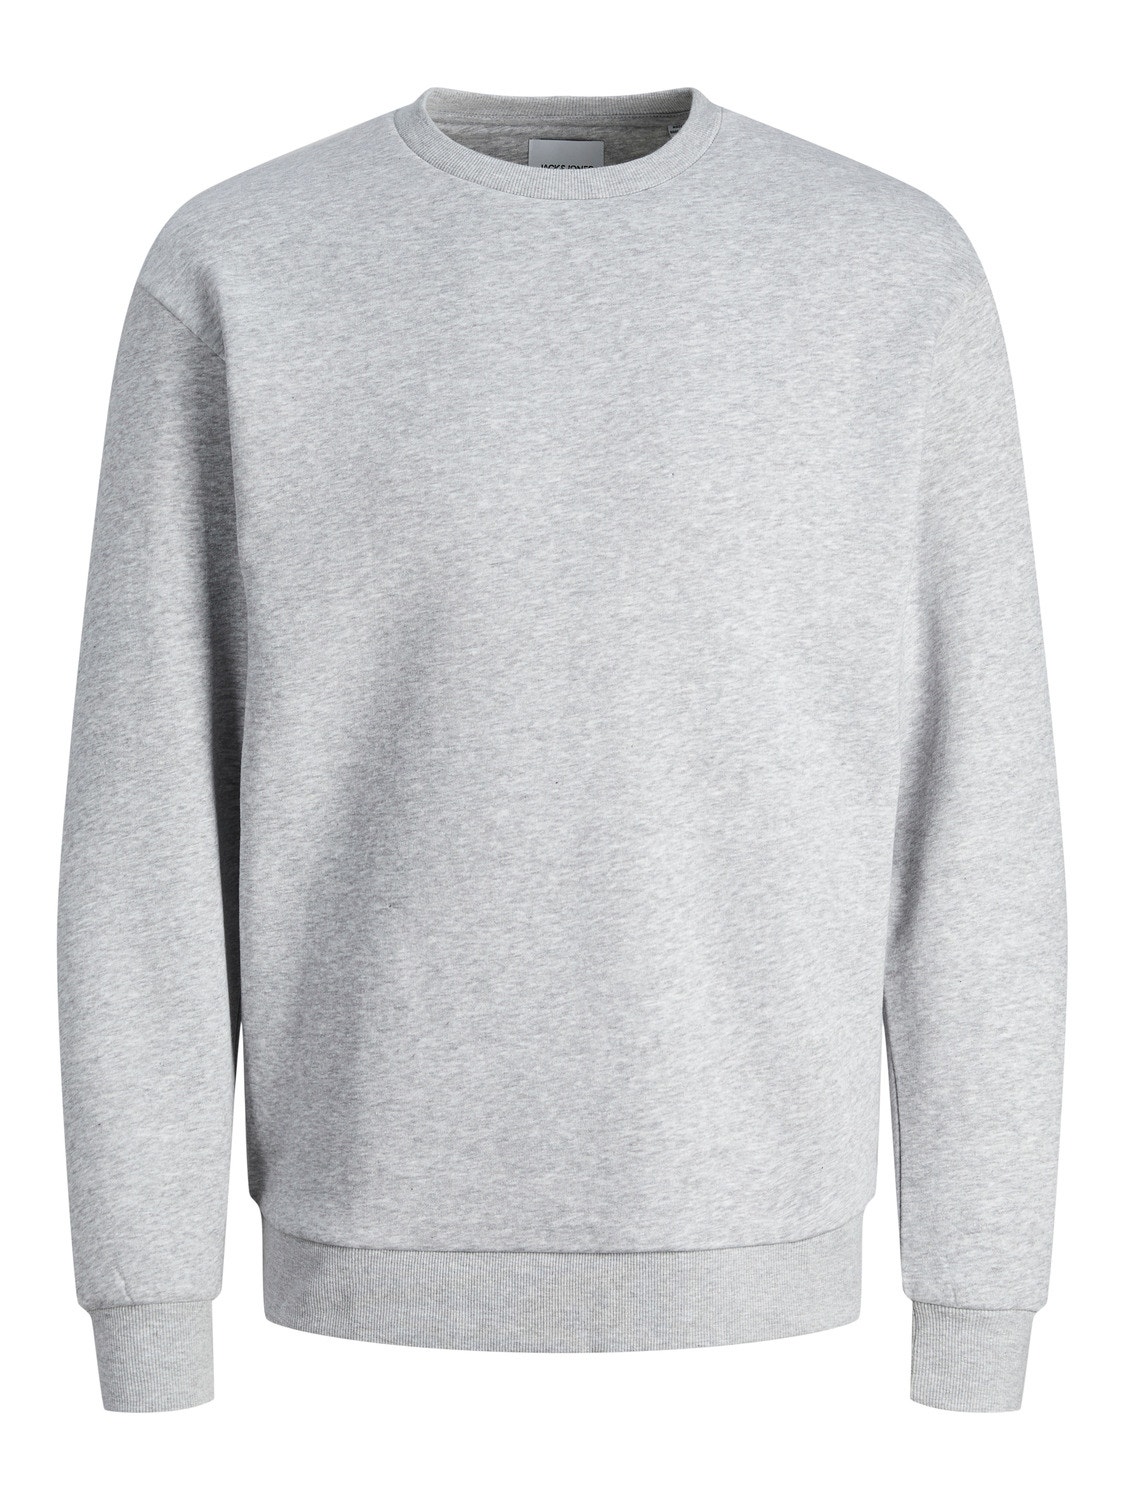 Jack & Jones Plain Crew neck Sweatshirt -Light Grey Melange - 12249341